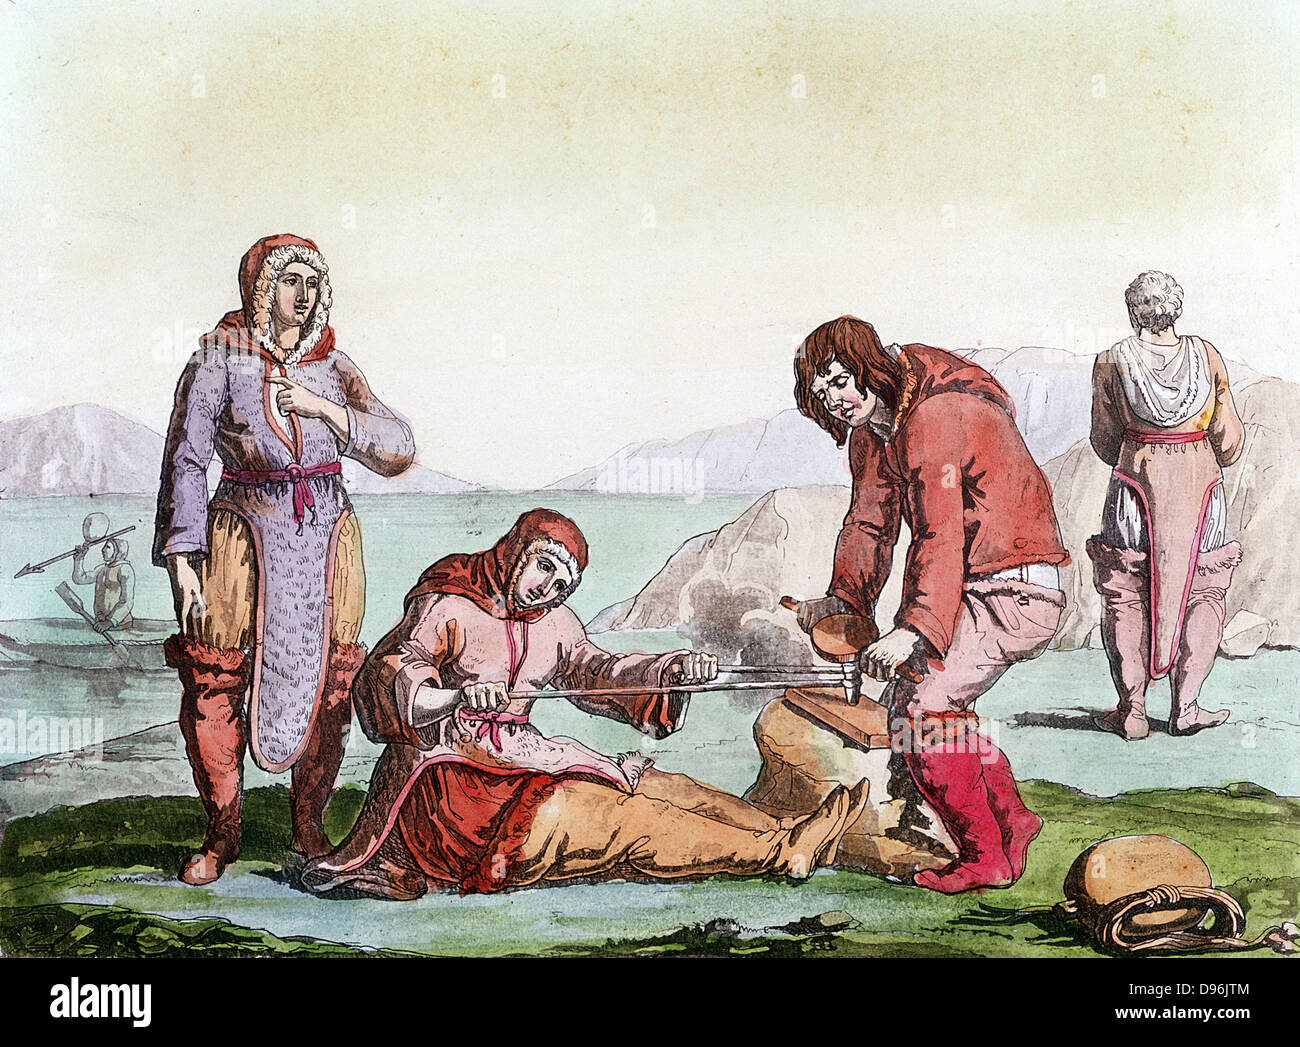 Ureinwohner der Arktis, gekleidet in Tierhäuten, mit einem Tanga-Bohrer zu  Feuer (Blister-Methode). Von "Kostüm Antico et Moderno", Rom, 1825-35  Stockfotografie - Alamy